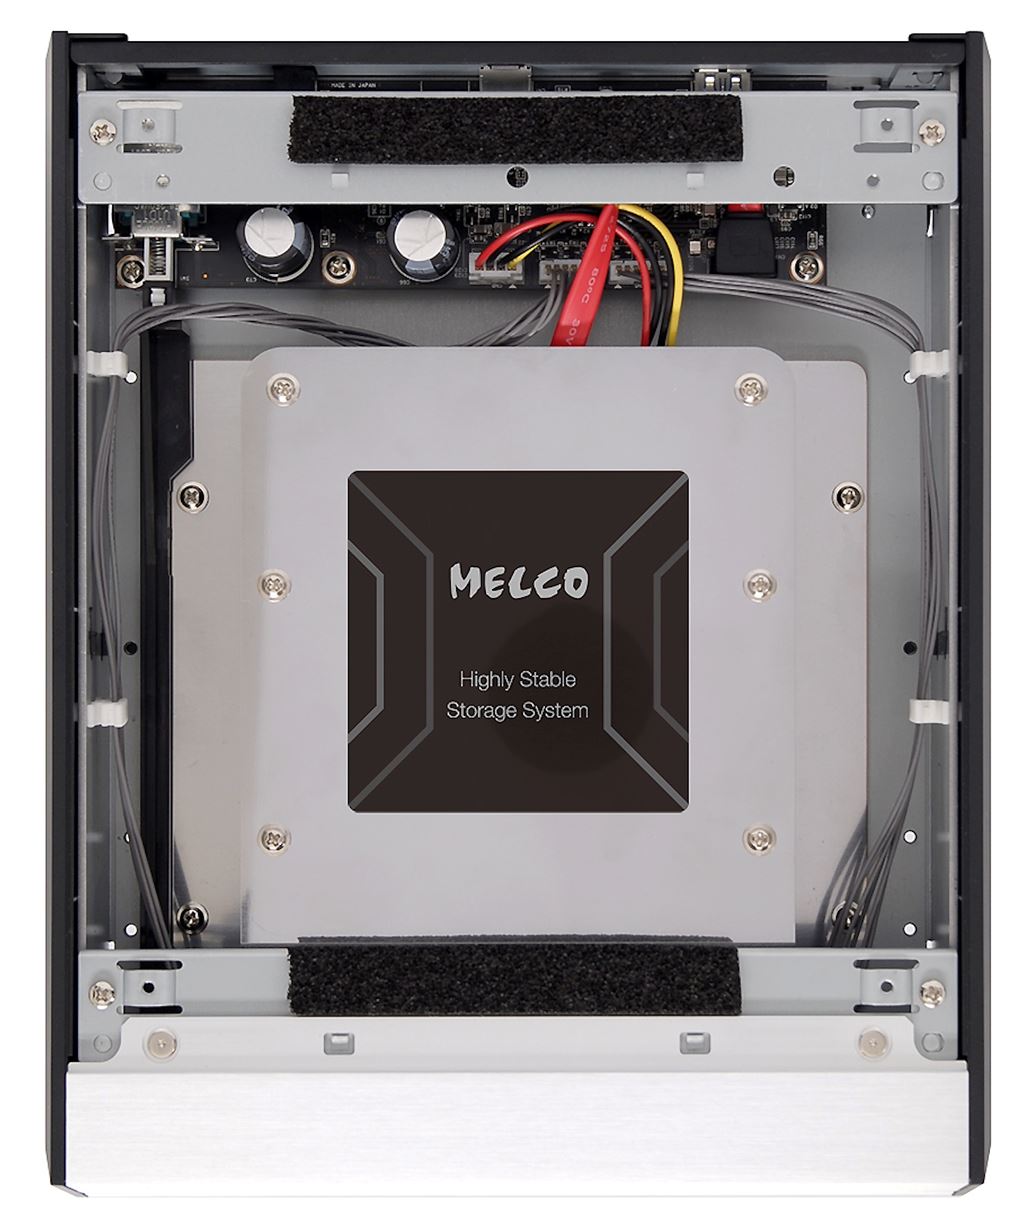 Melco giới thiệu đầu đọc/rip CD kết nối USB D-100 và bộ lưu trữ nhạc mở rộng E-100 ảnh 4